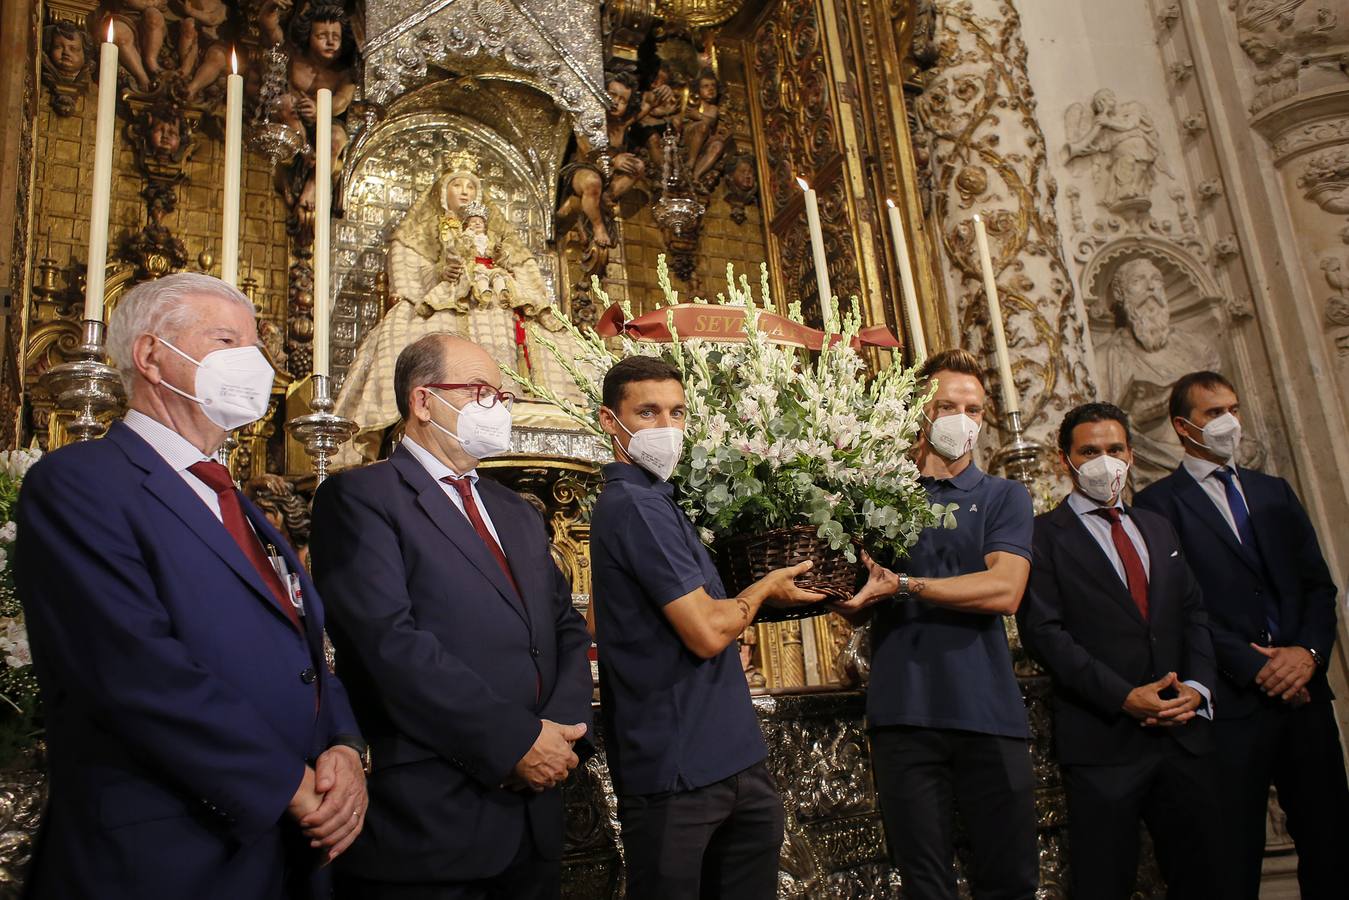 Ofrenda floral del Sevilla FC a la Virgen de los Reyes